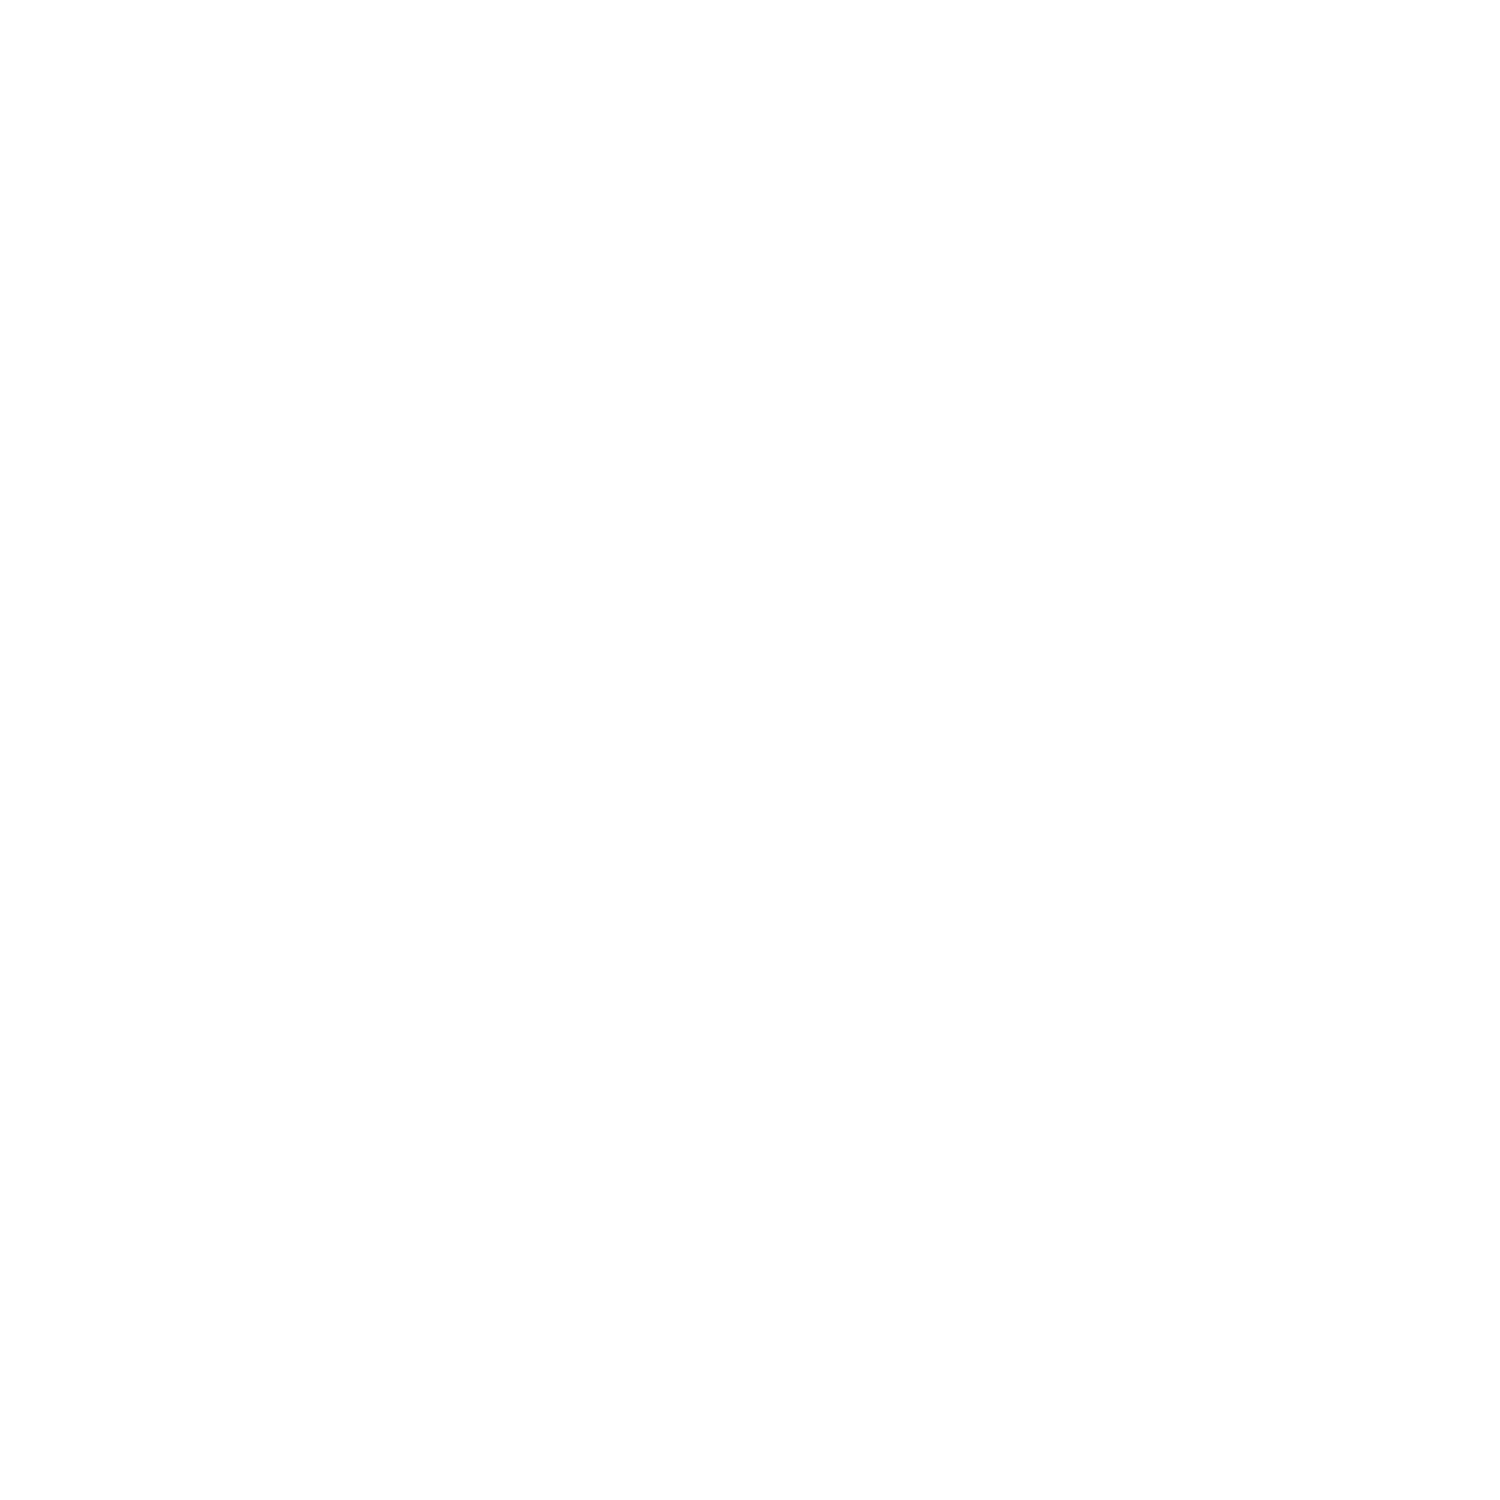 Moohi Agency